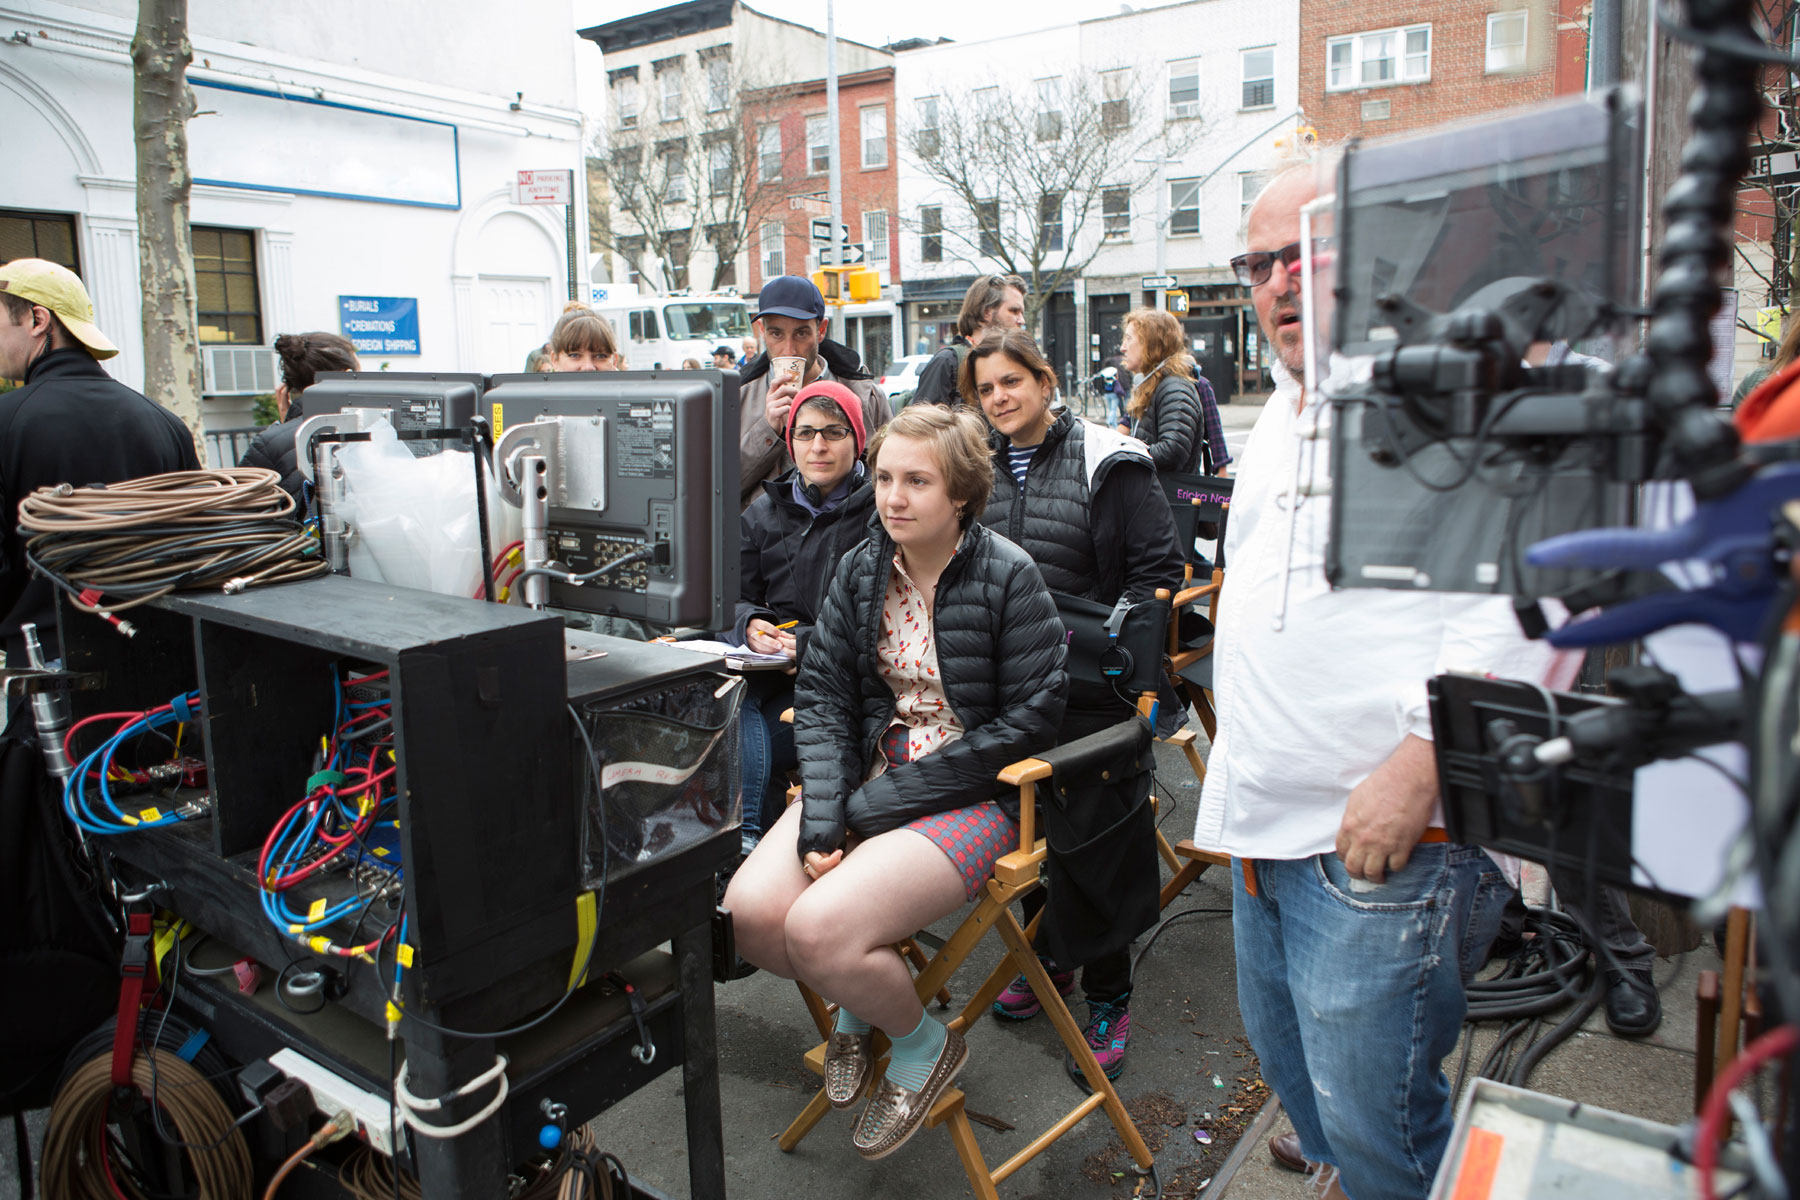 Lena Dunham - reżyserka, scenarzystka, producentka i odtwórczyni głównej roli.